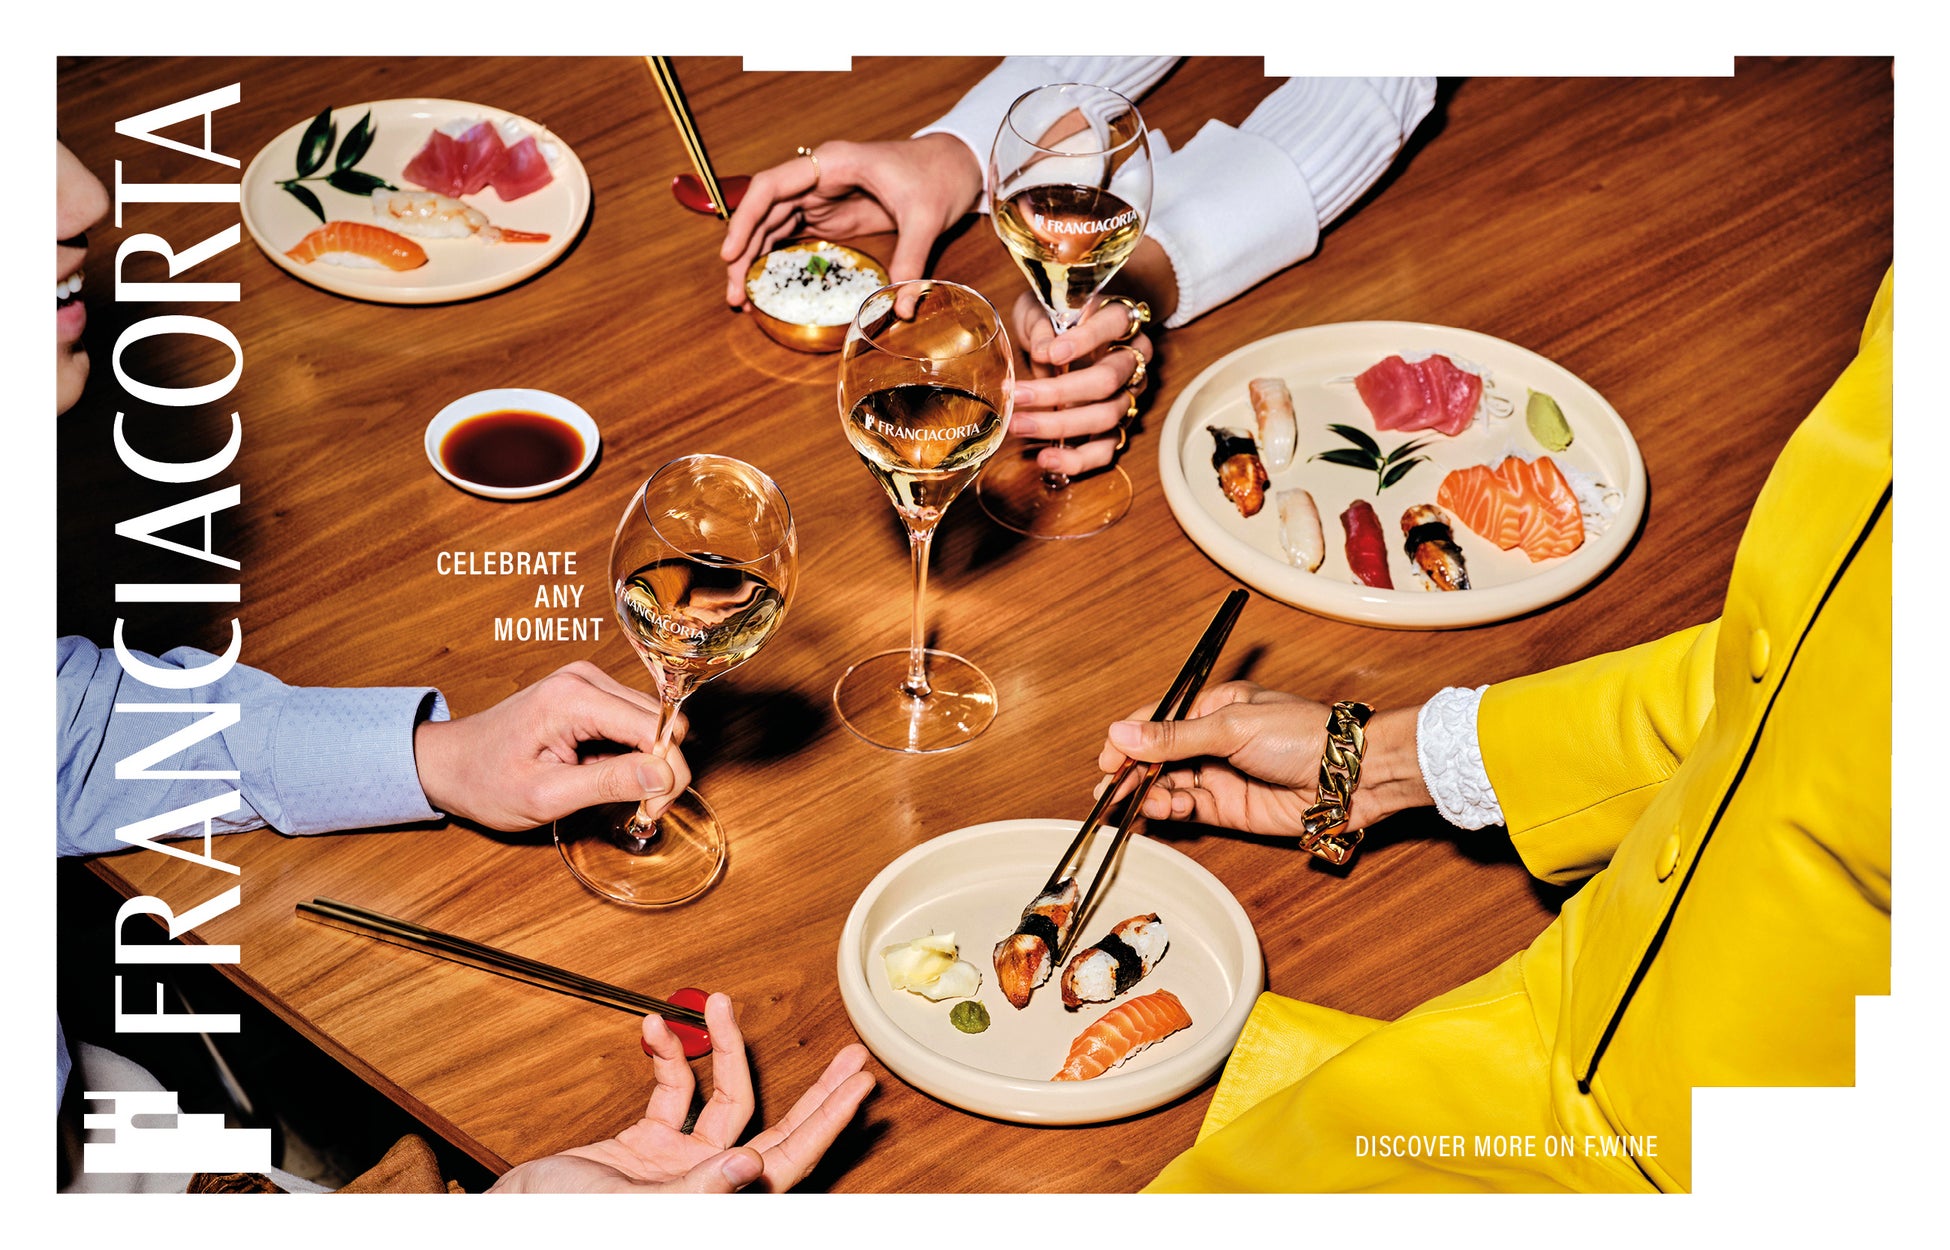 伊最高級スパークリングワイン「フランチャコルタ 」が新広告キャンペーンを公開